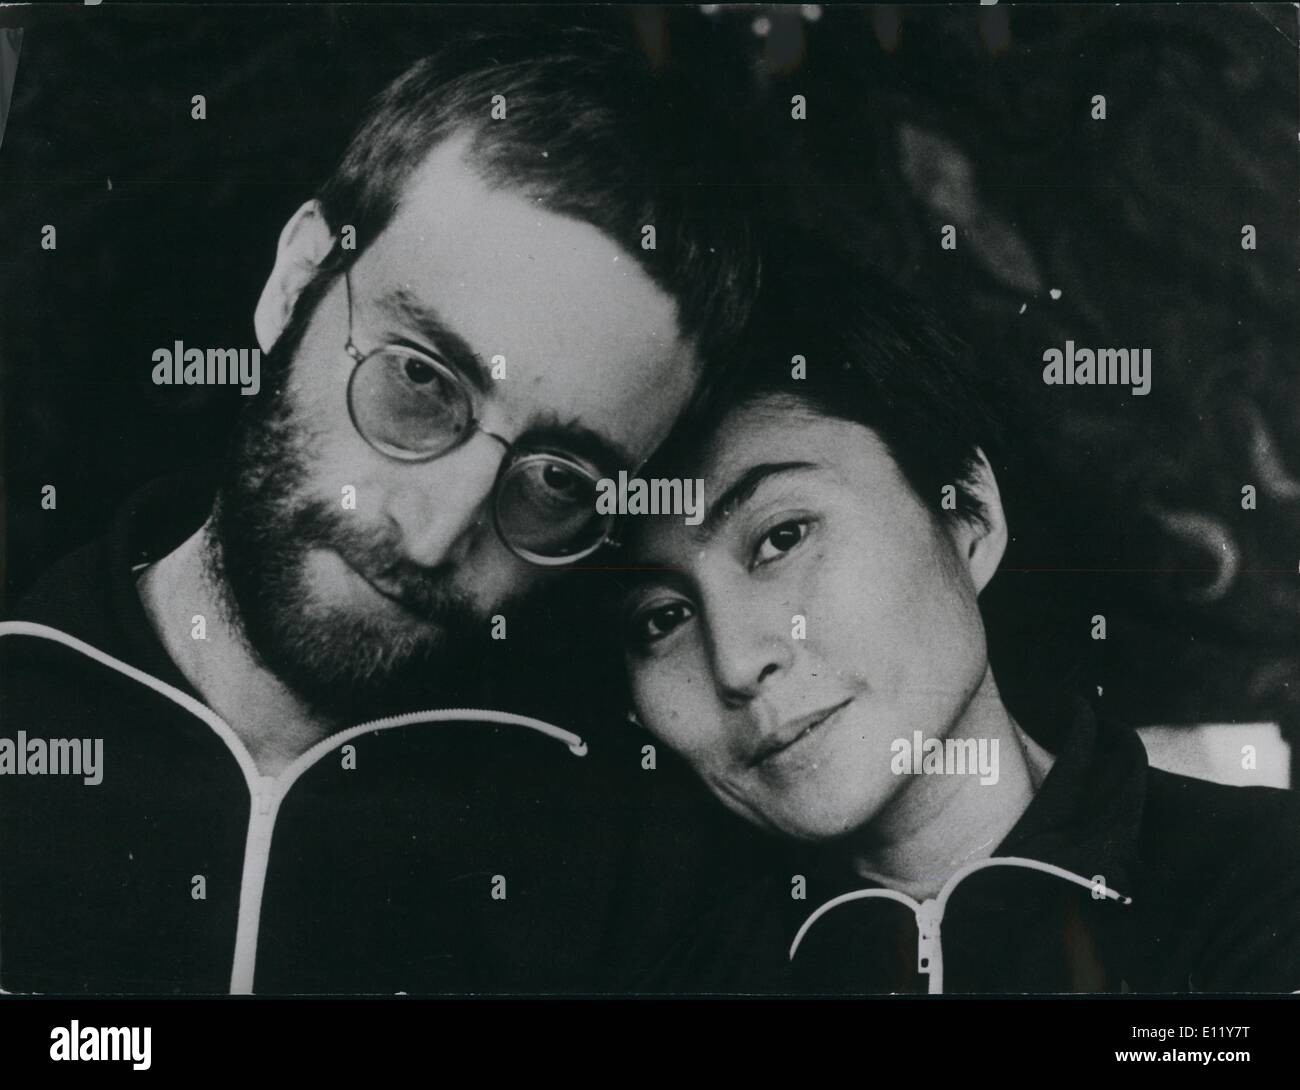 Il 12 Dic. 1980 - John Lennon ucciso: Formern Beatle John Lennon è stato girato in cinque volte al suo appartamento nella città di New York la scorsa notte ed era morto all'arrivo in ospedale. Mostra fotografica di John Lennon con la moglie Yoko Ono raffigurata nel 1970. Questa era la prima volta che l'Ex-Beatle era stato fotografato con capelli corti poiché il suo ''hippy Days'' La foto è stata scattata da Anthony Cox, ex marito di Yoko Foto Stock